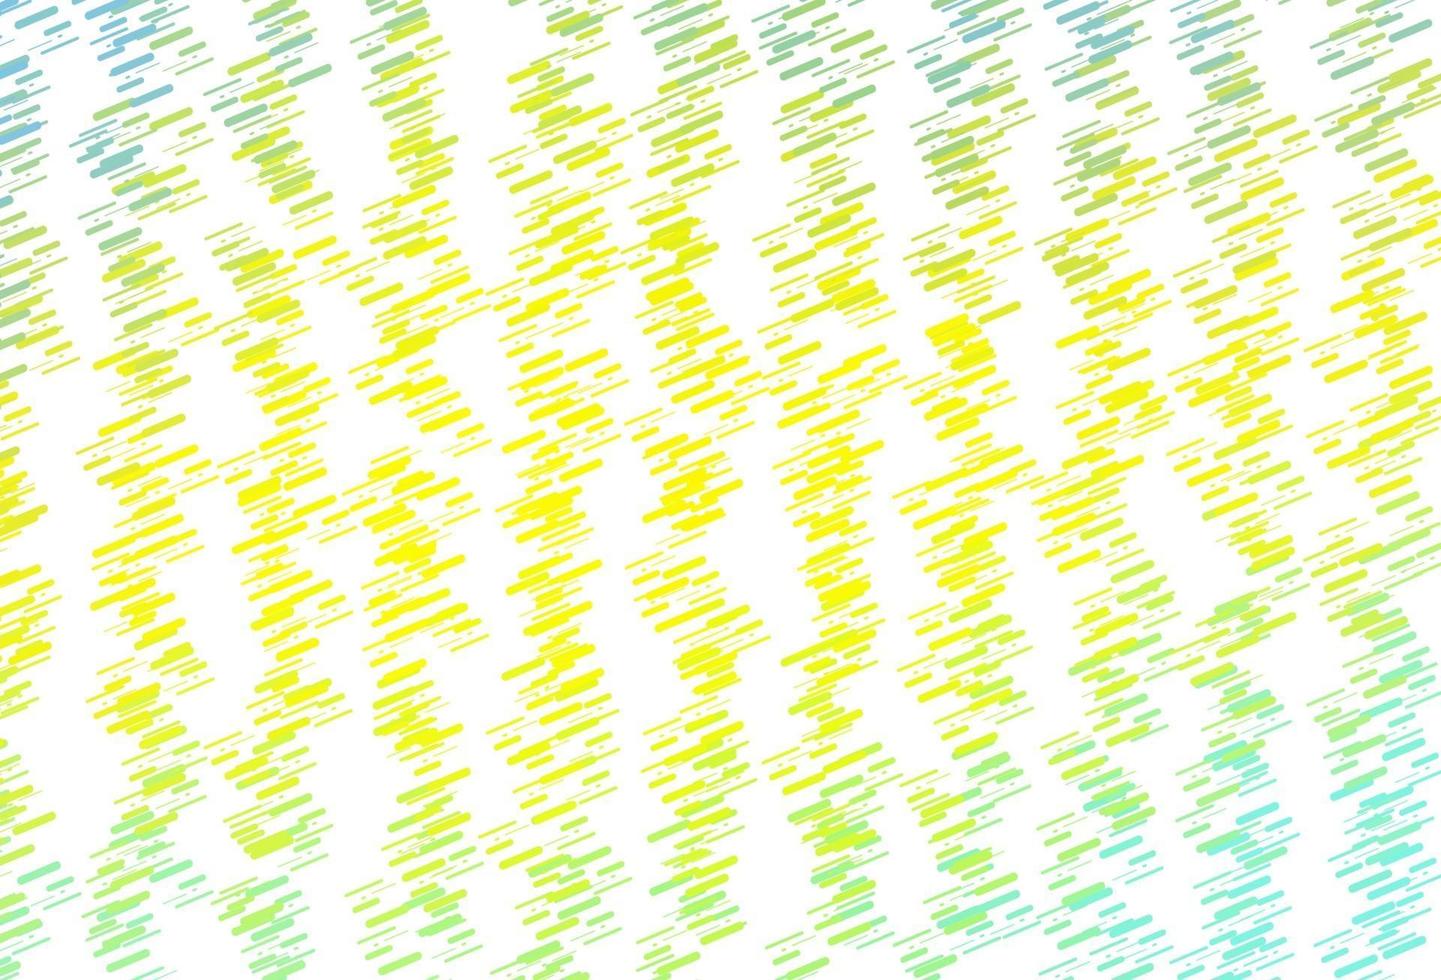 sfondo vettoriale verde chiaro, giallo con linee rette.